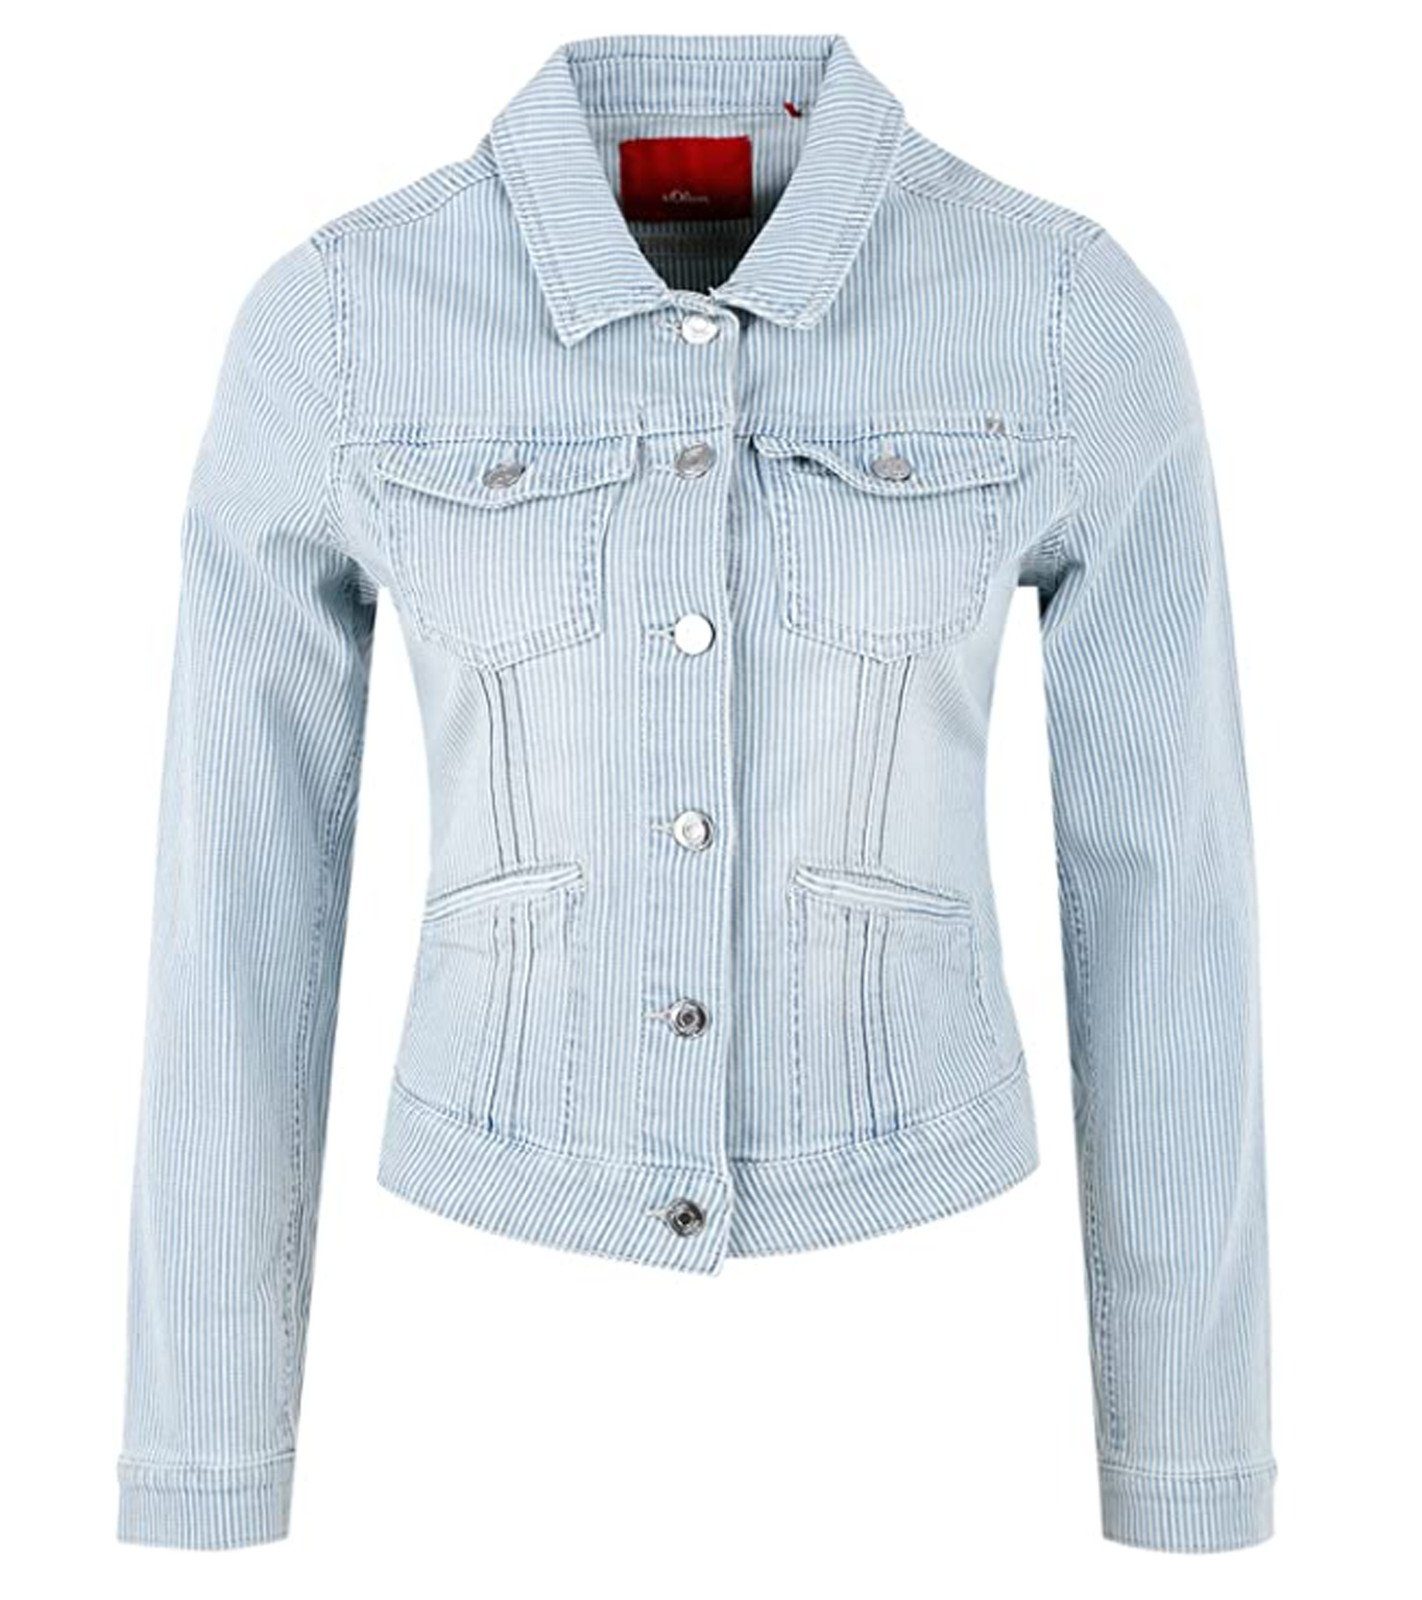 Streifenmuster Freizeit-Jacke Damen s.Oliver mit Jeans-Jacke Jeansjacke s.Oliver Frühlings-Jacke angesagte Blau/Weiß